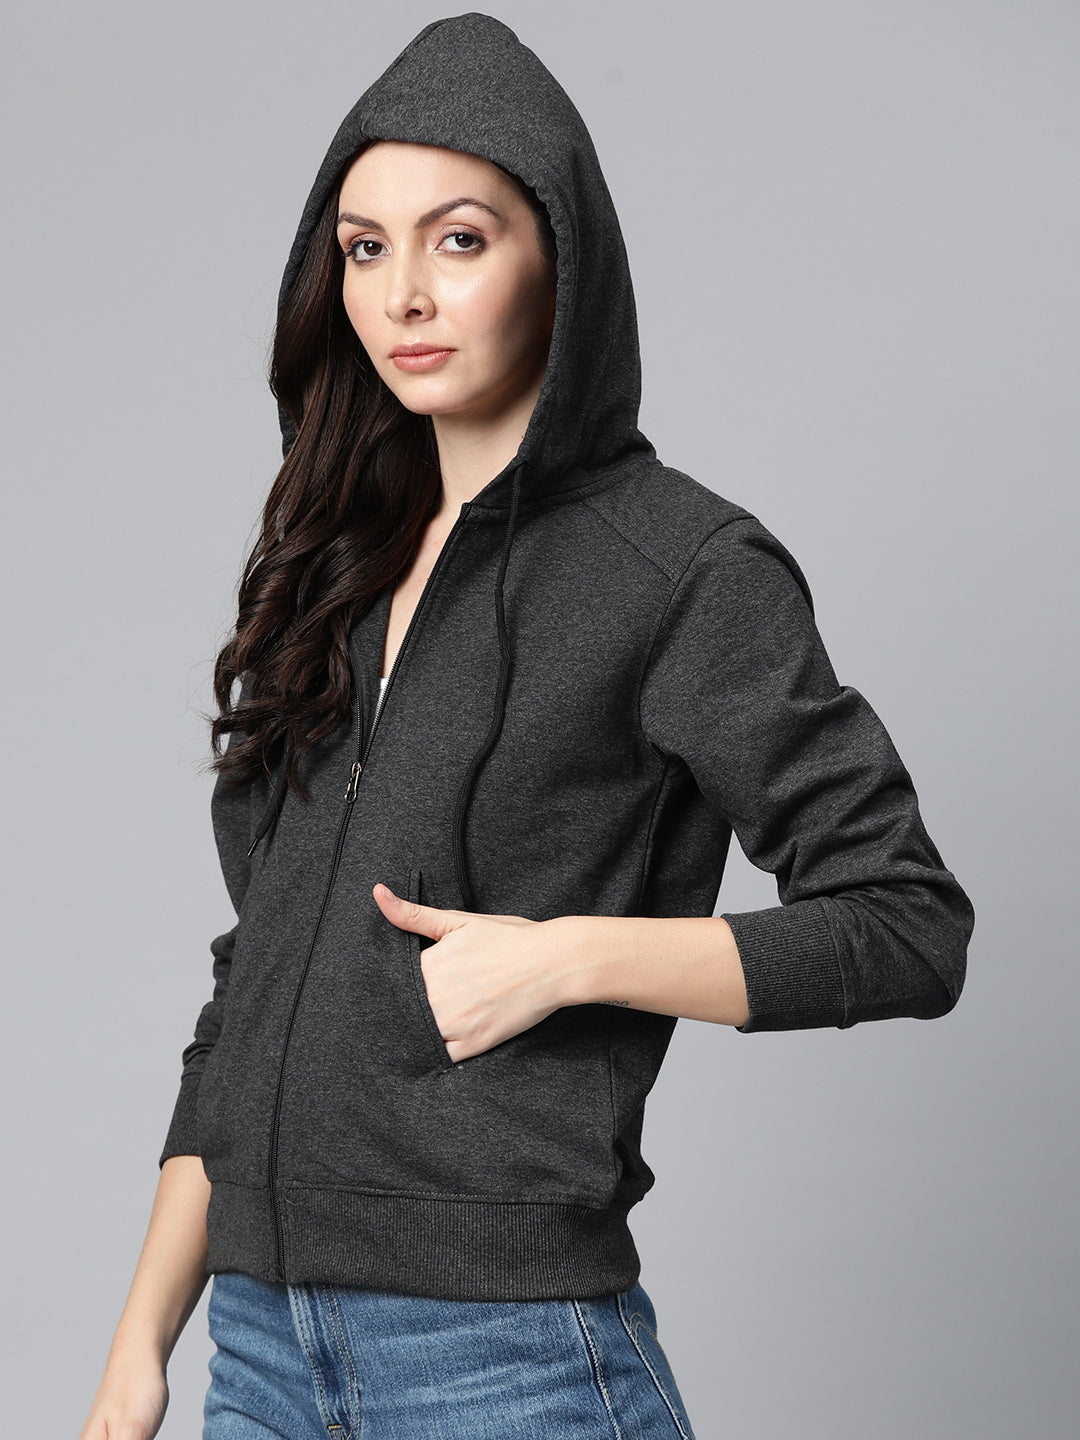 Laabha Stylish Women Charcoal Sweatshirt with Zipper